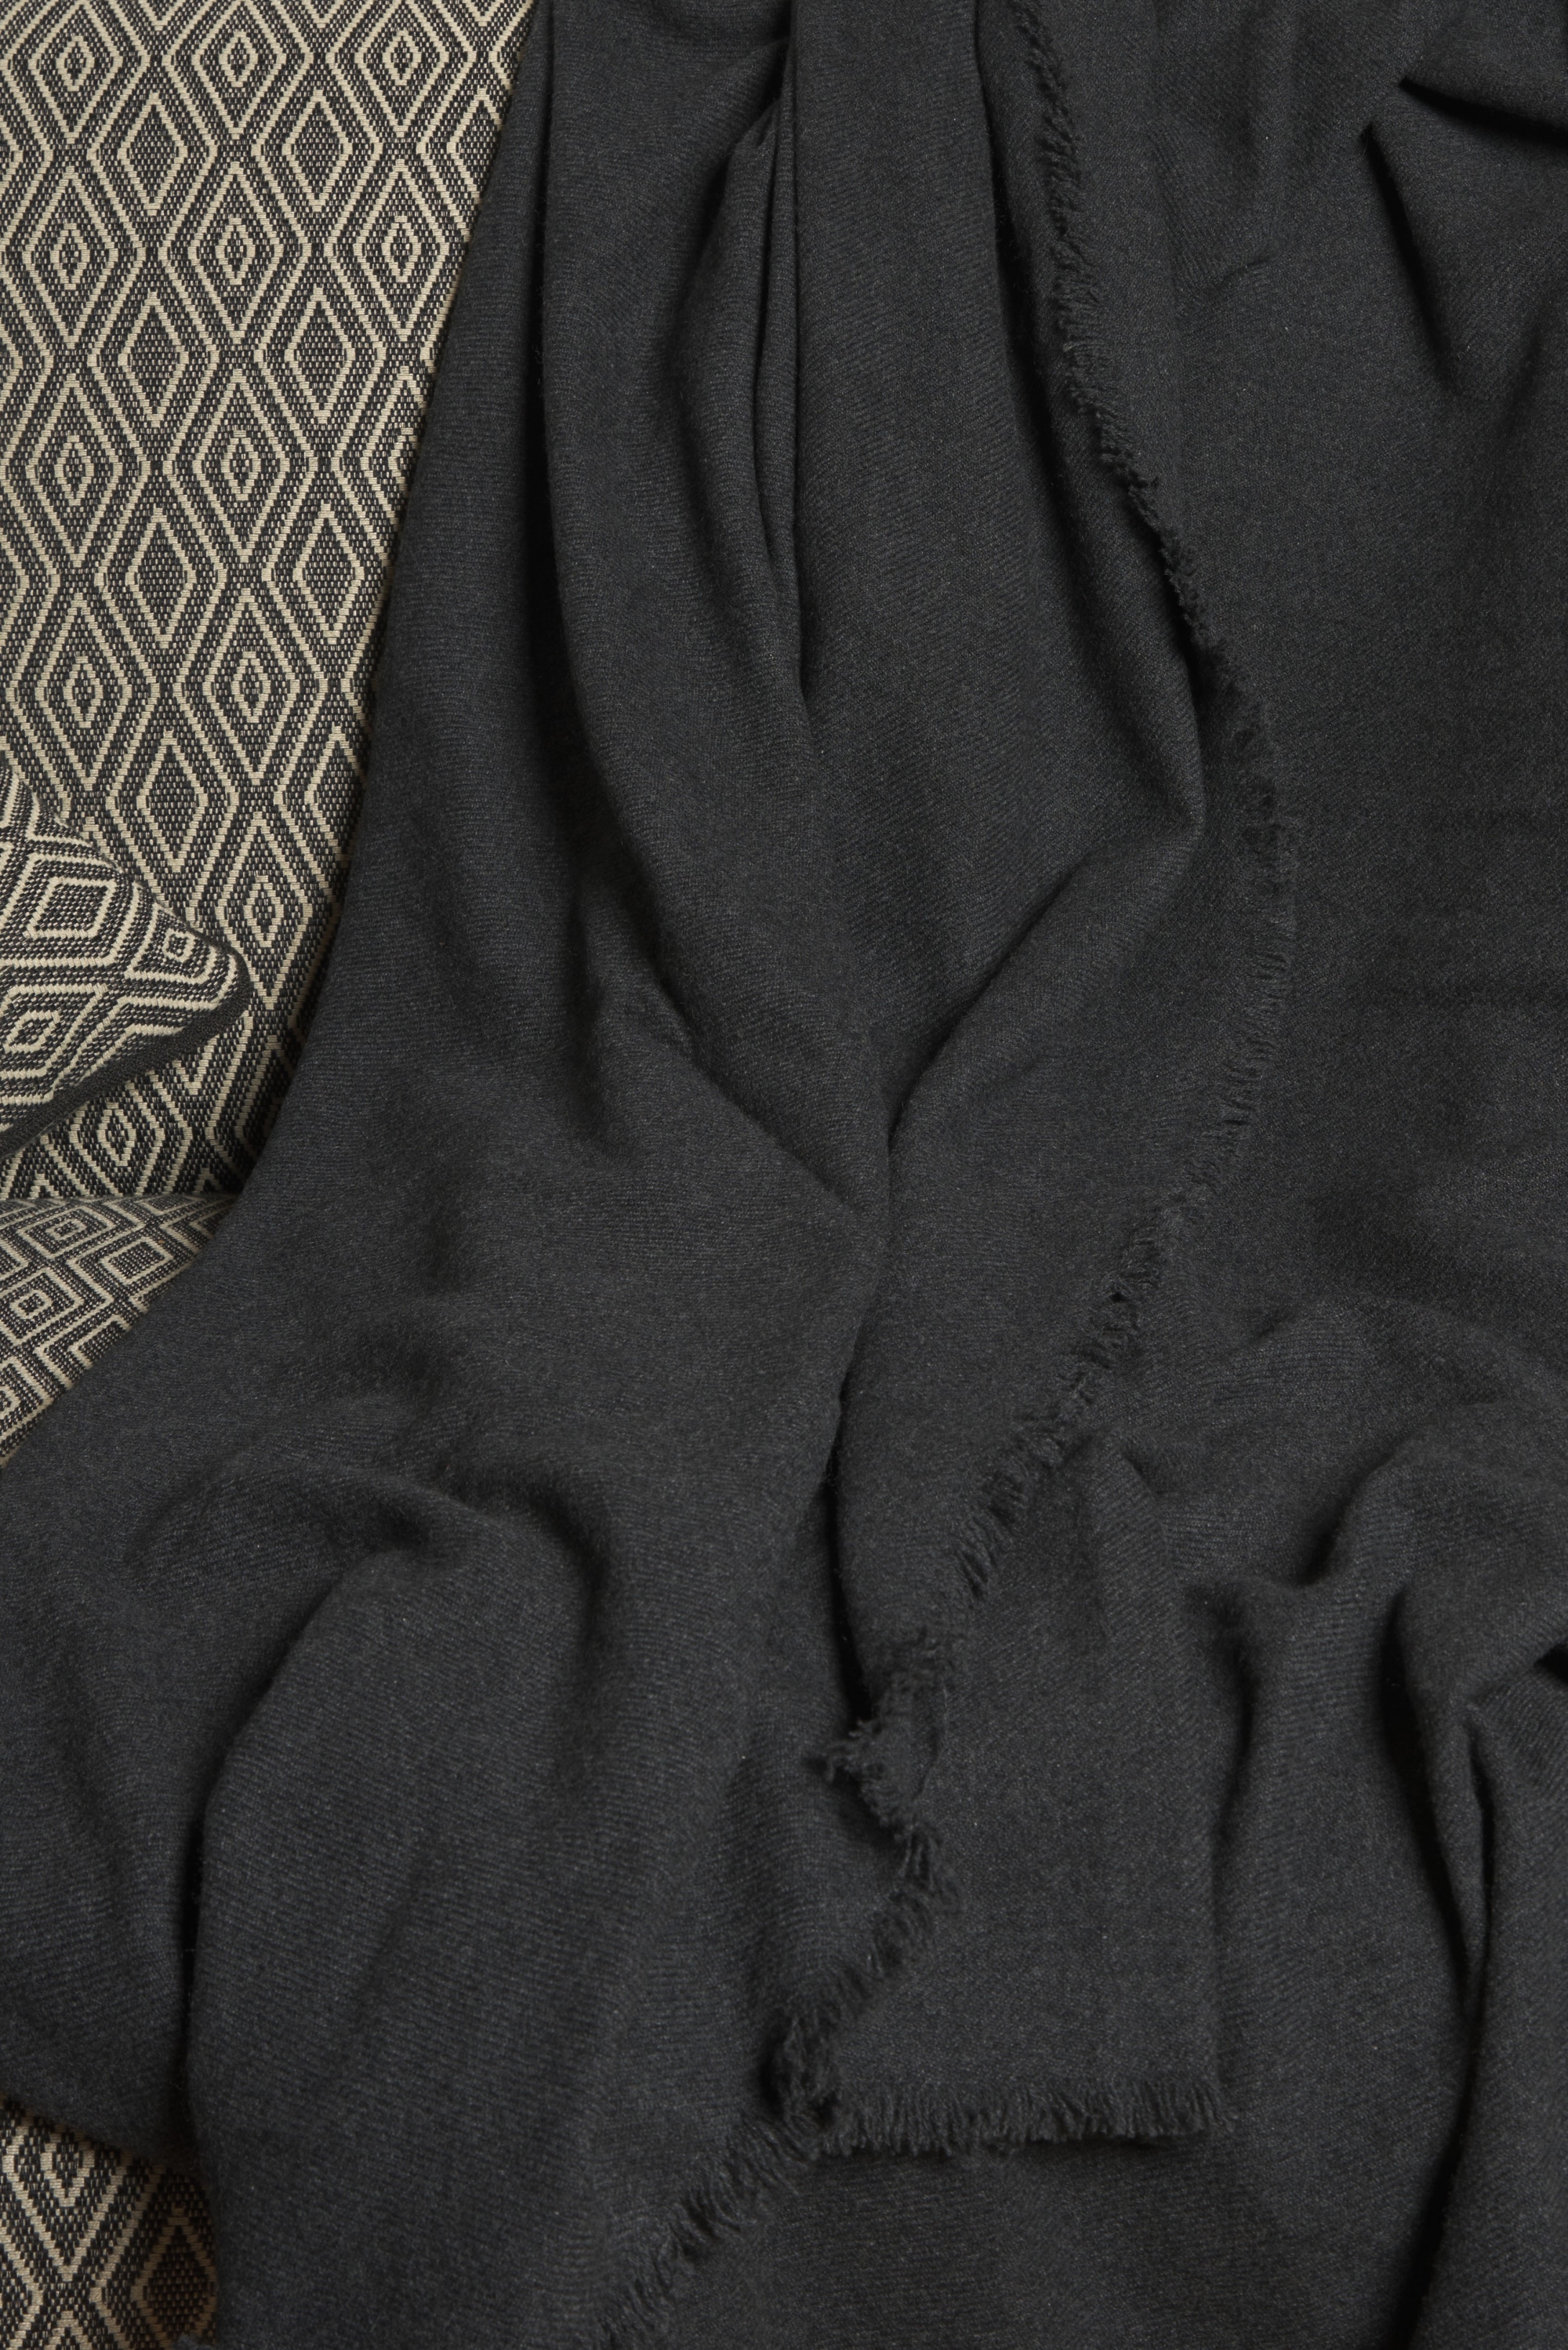 Cachemire accessoires couvertures plaids toodoo plain s 140 x 200 carbon 140 x 200 cm